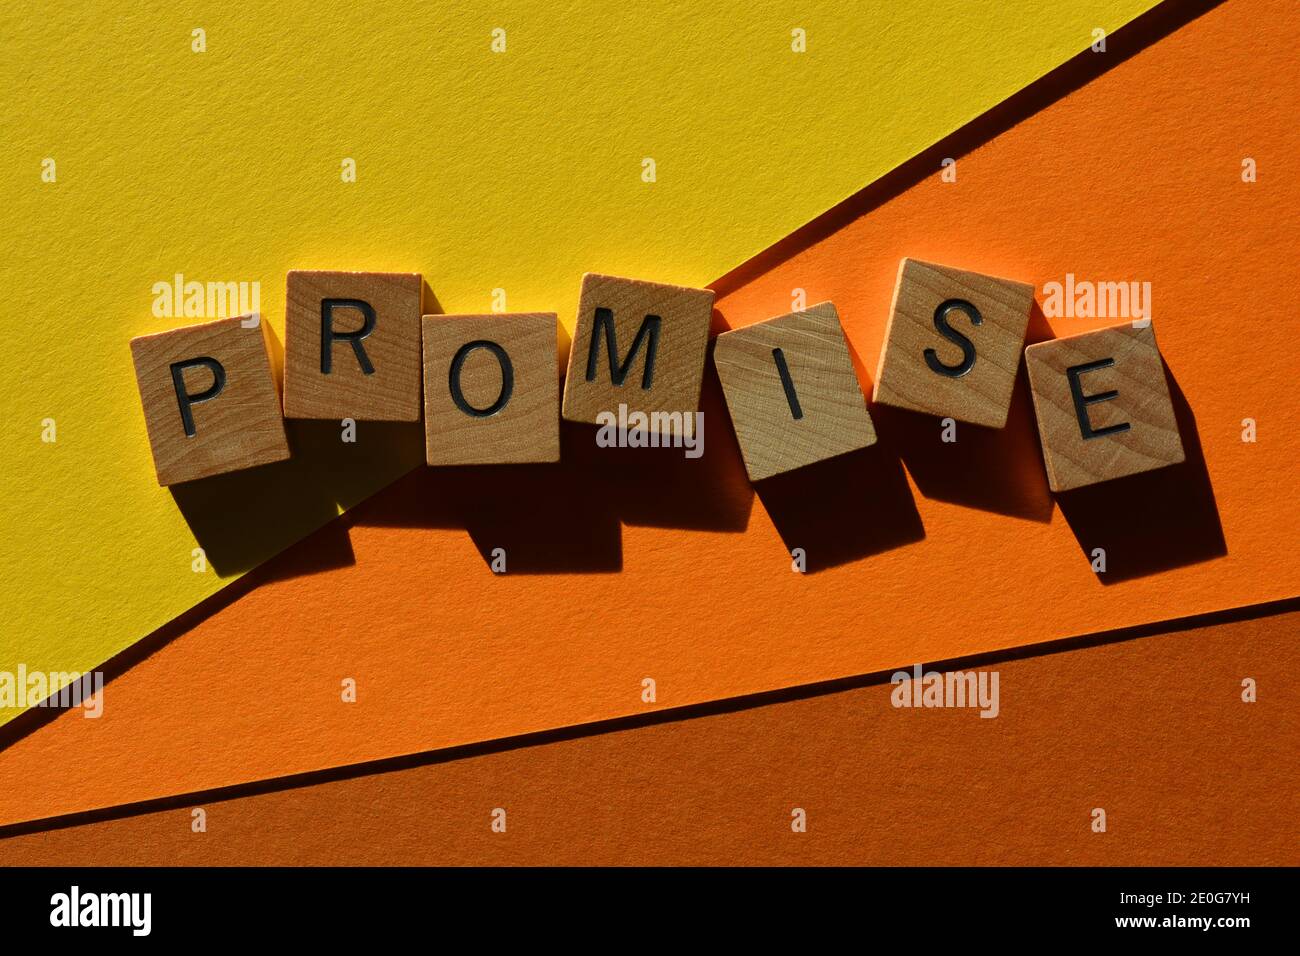 Promessa, parola in lettere alfabetiche in legno isolato su sfondo colorato Foto Stock